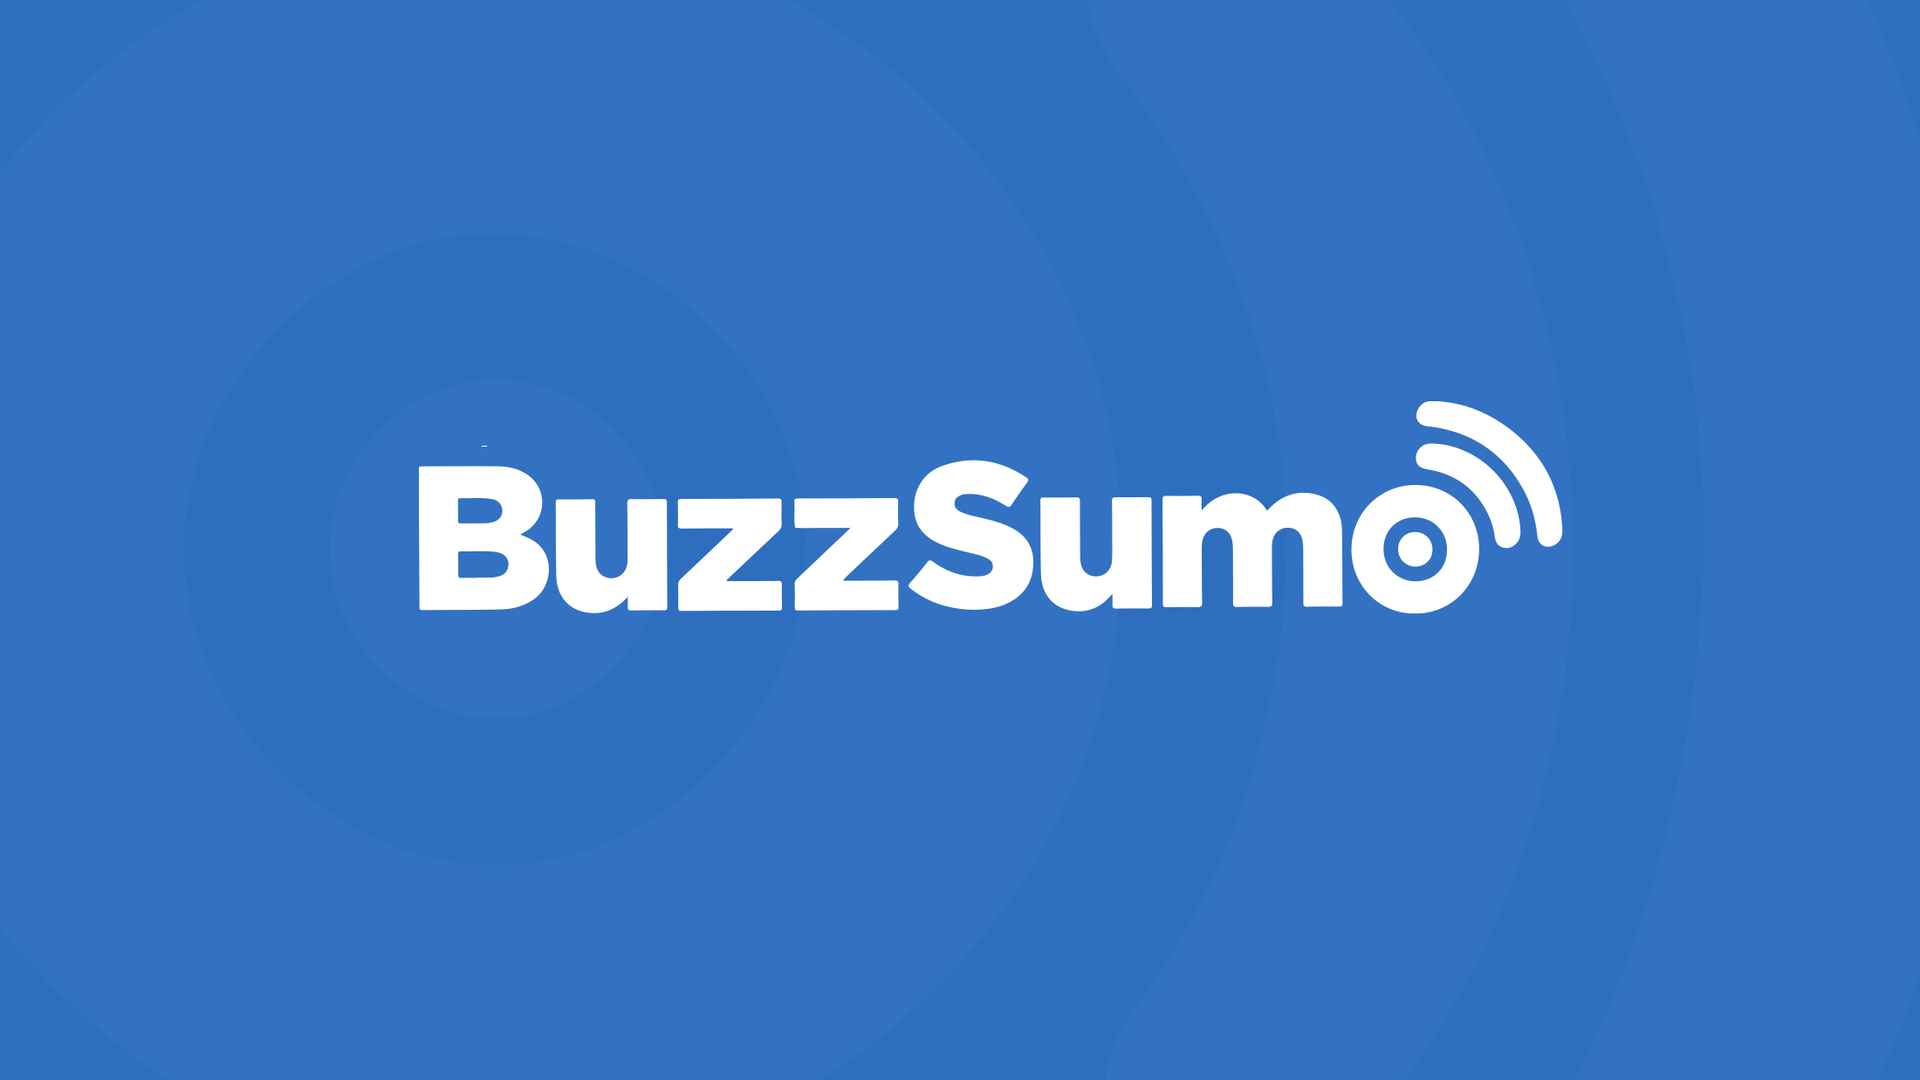 Buzzsumo "presentation image"